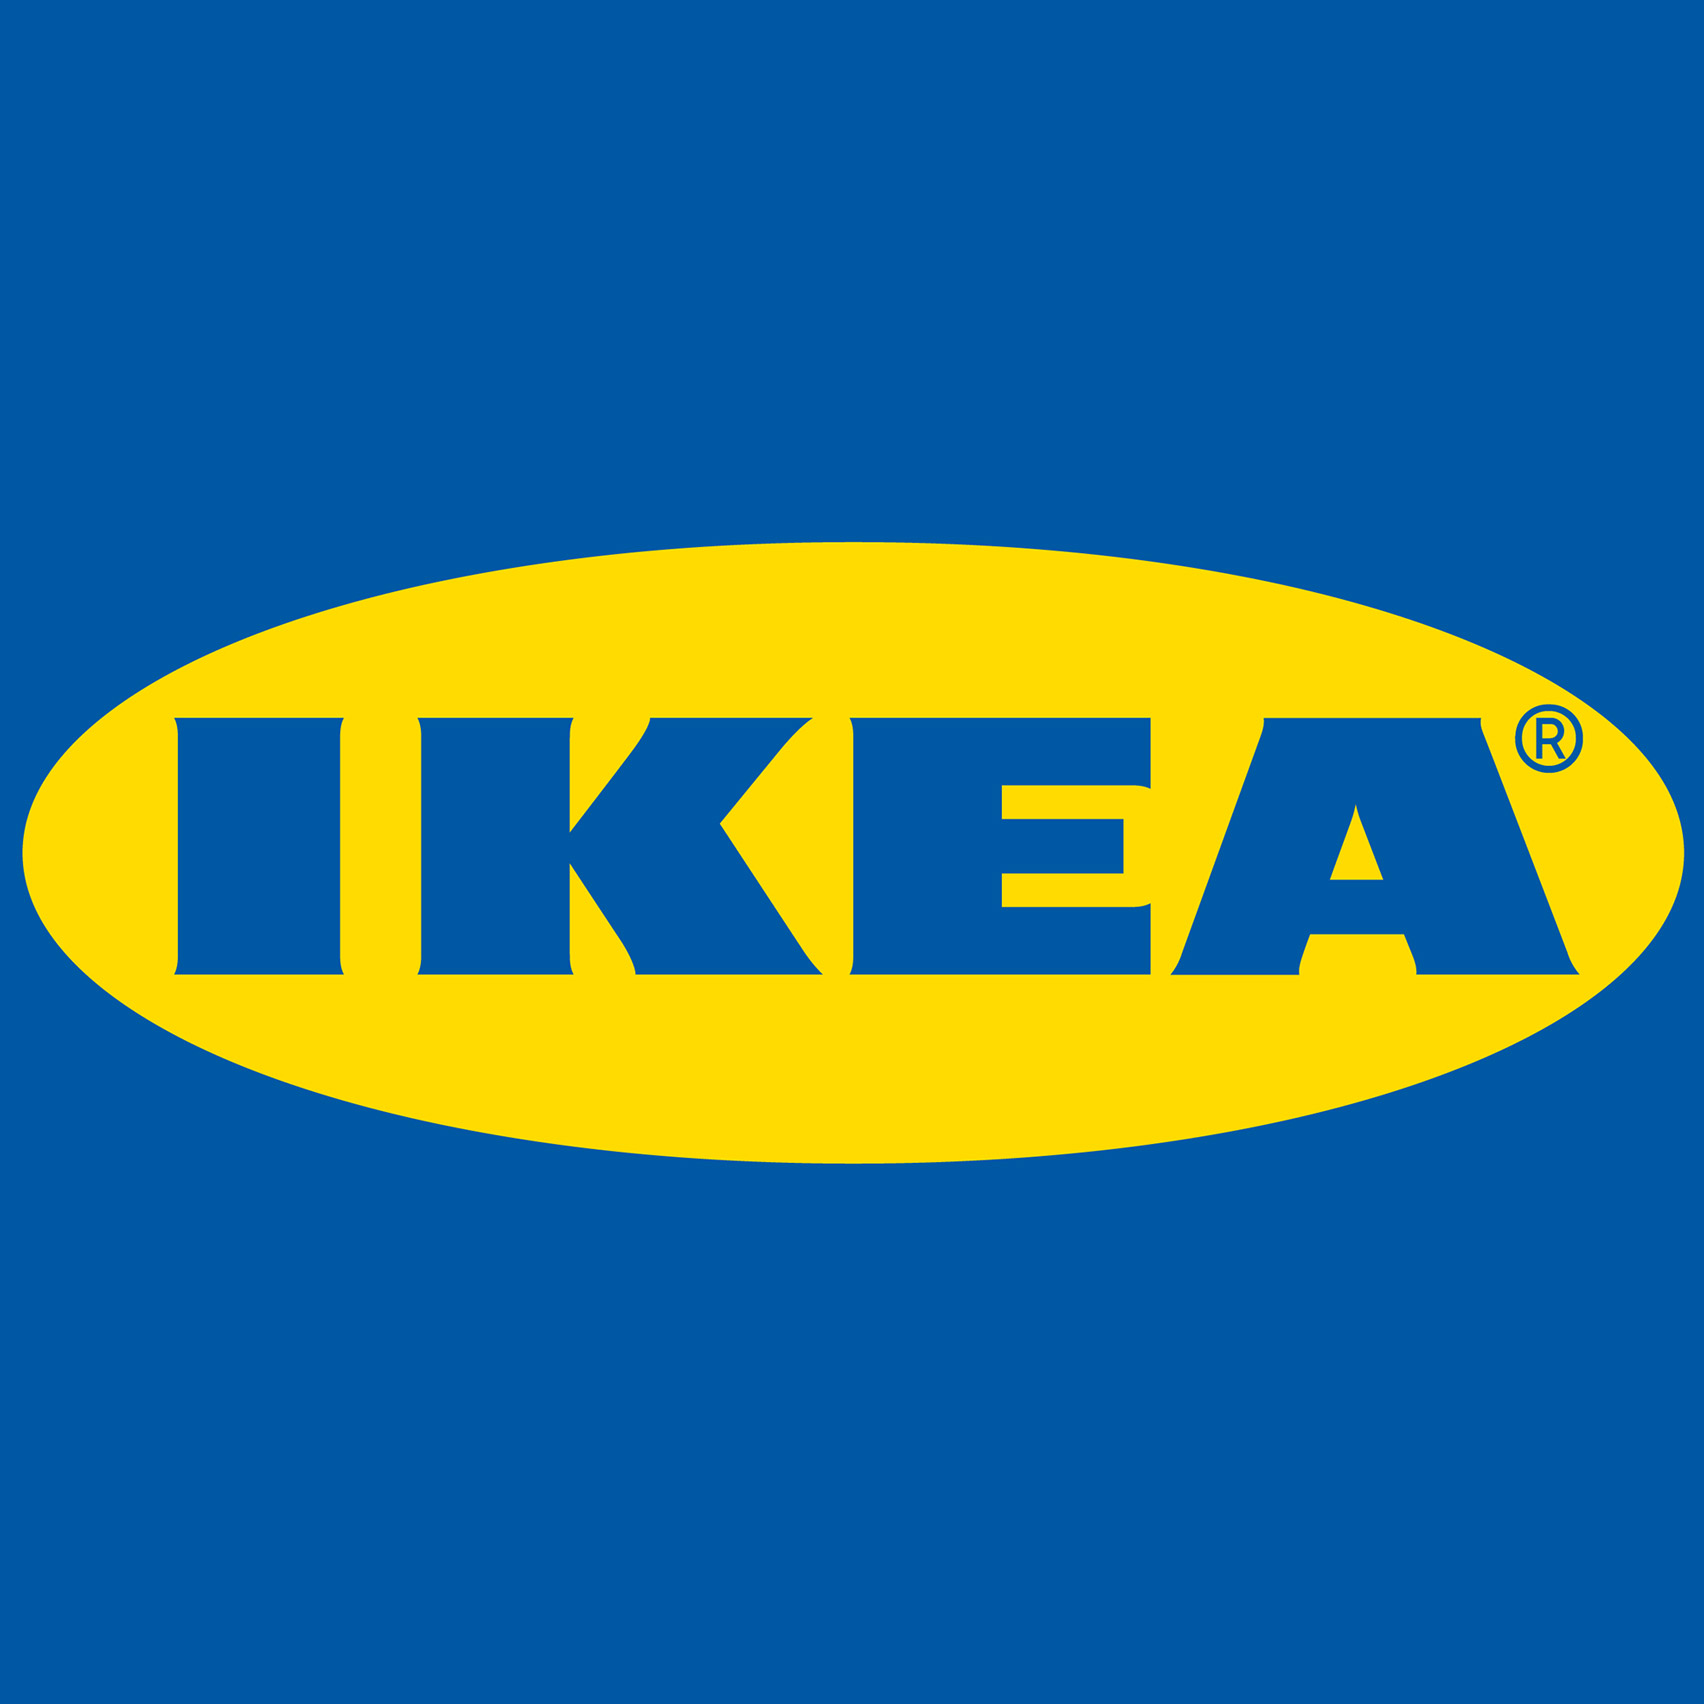 Ikea Спб Интернет Магазин